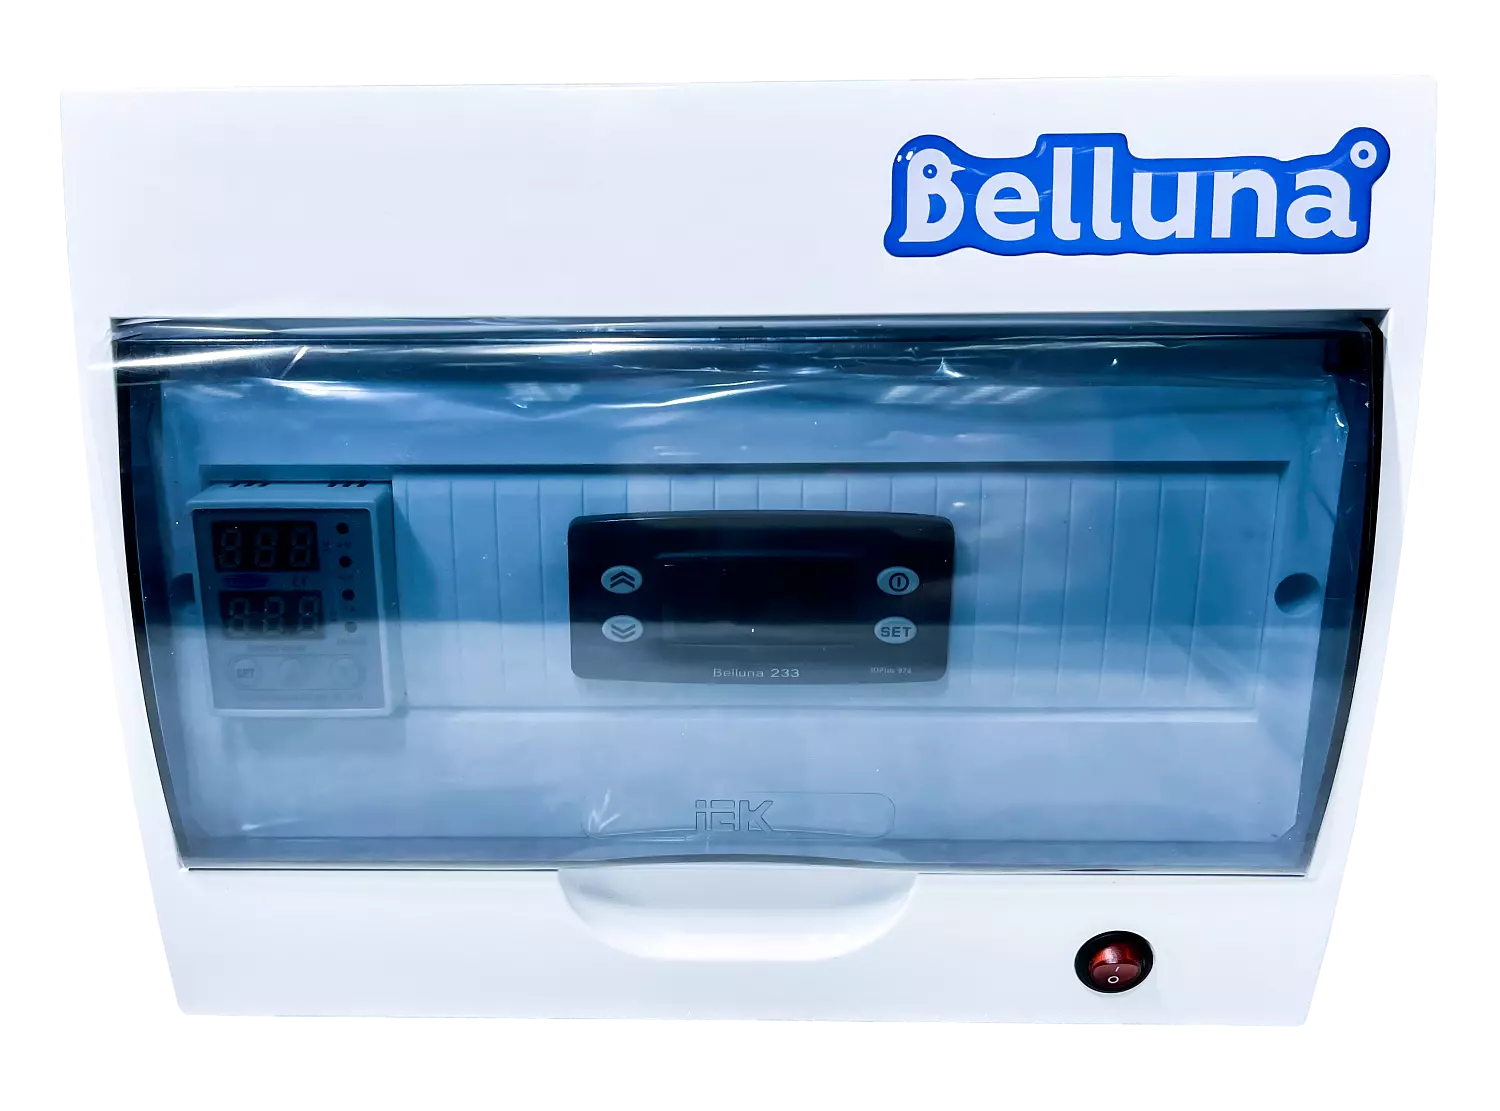 сплит-система Belluna iP-6 Краснодар